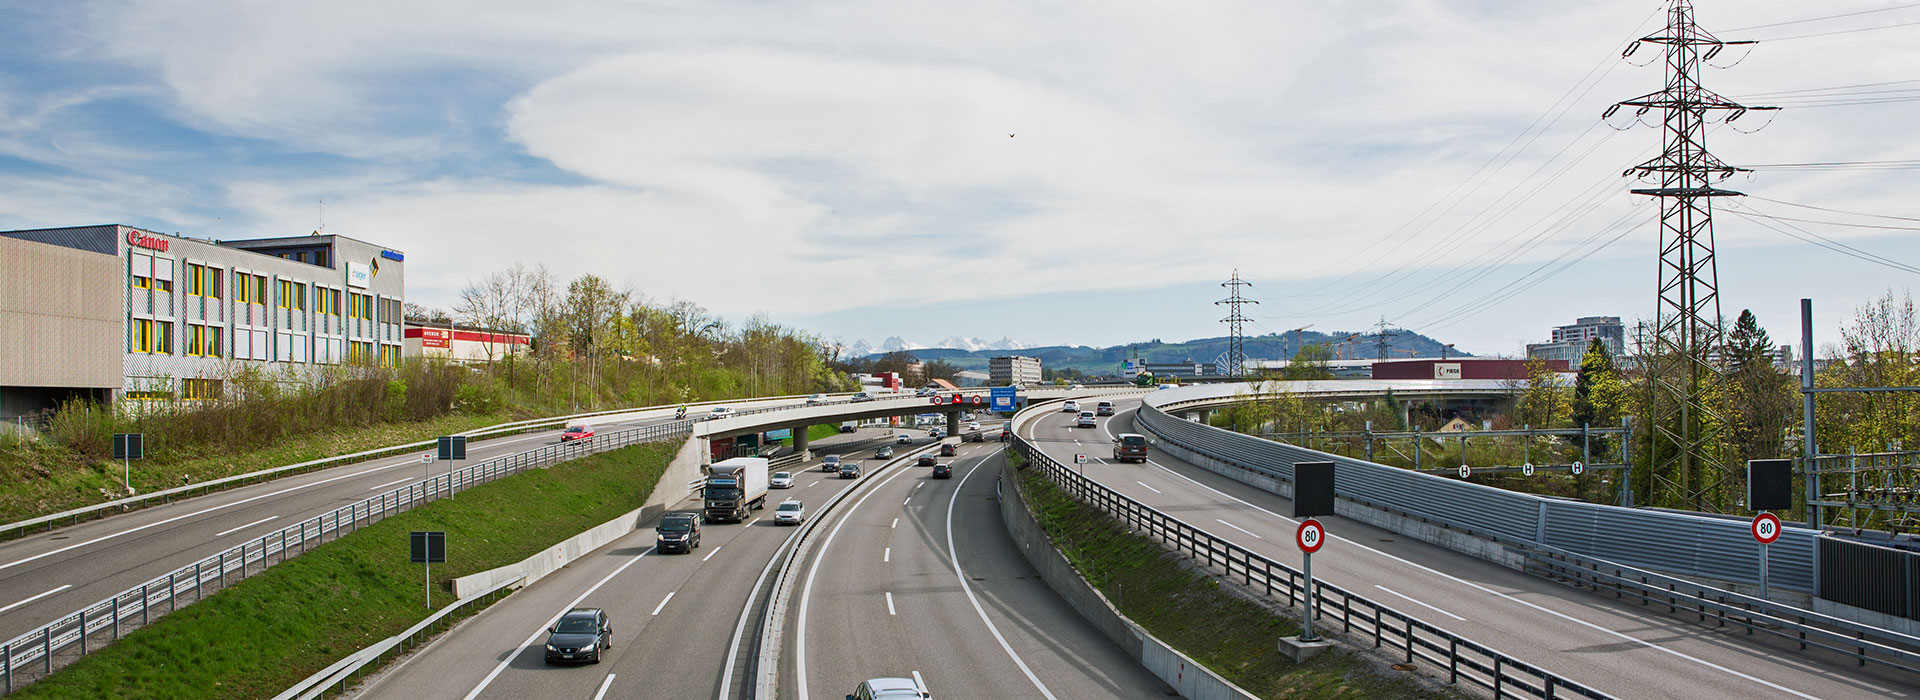 Mehrspurige Autobahn, Schweiz